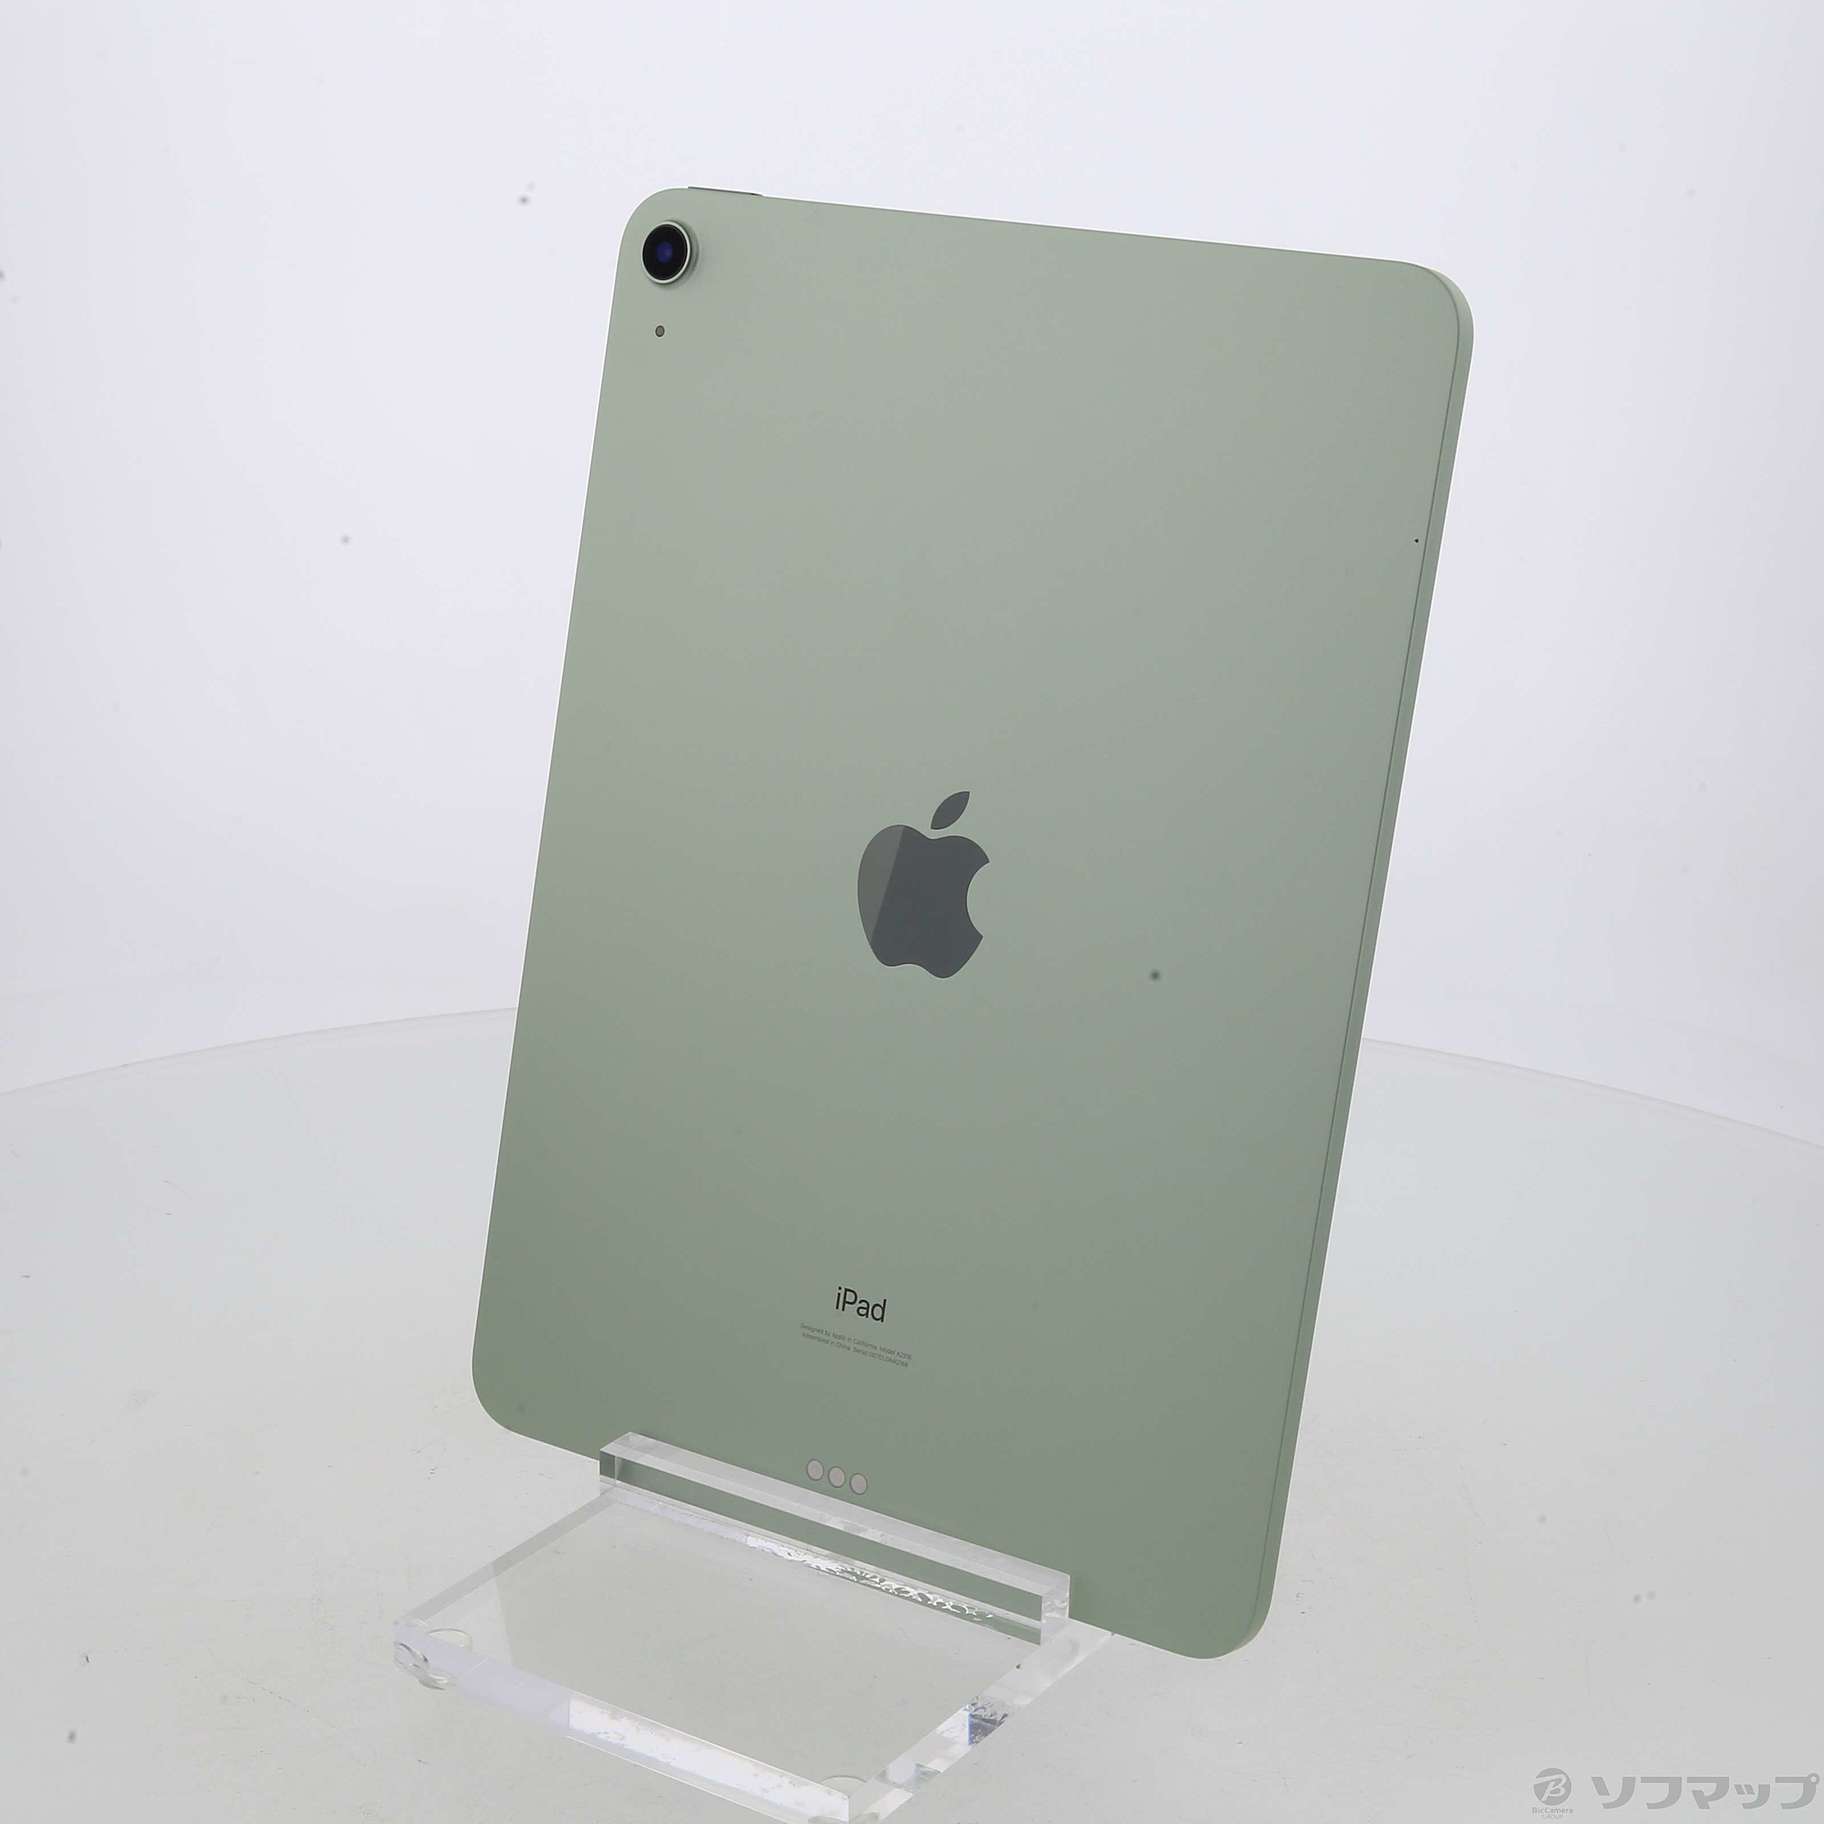 純正新作  グリーン WiFi 64GB Air4 【新品未使用】iPad タブレット